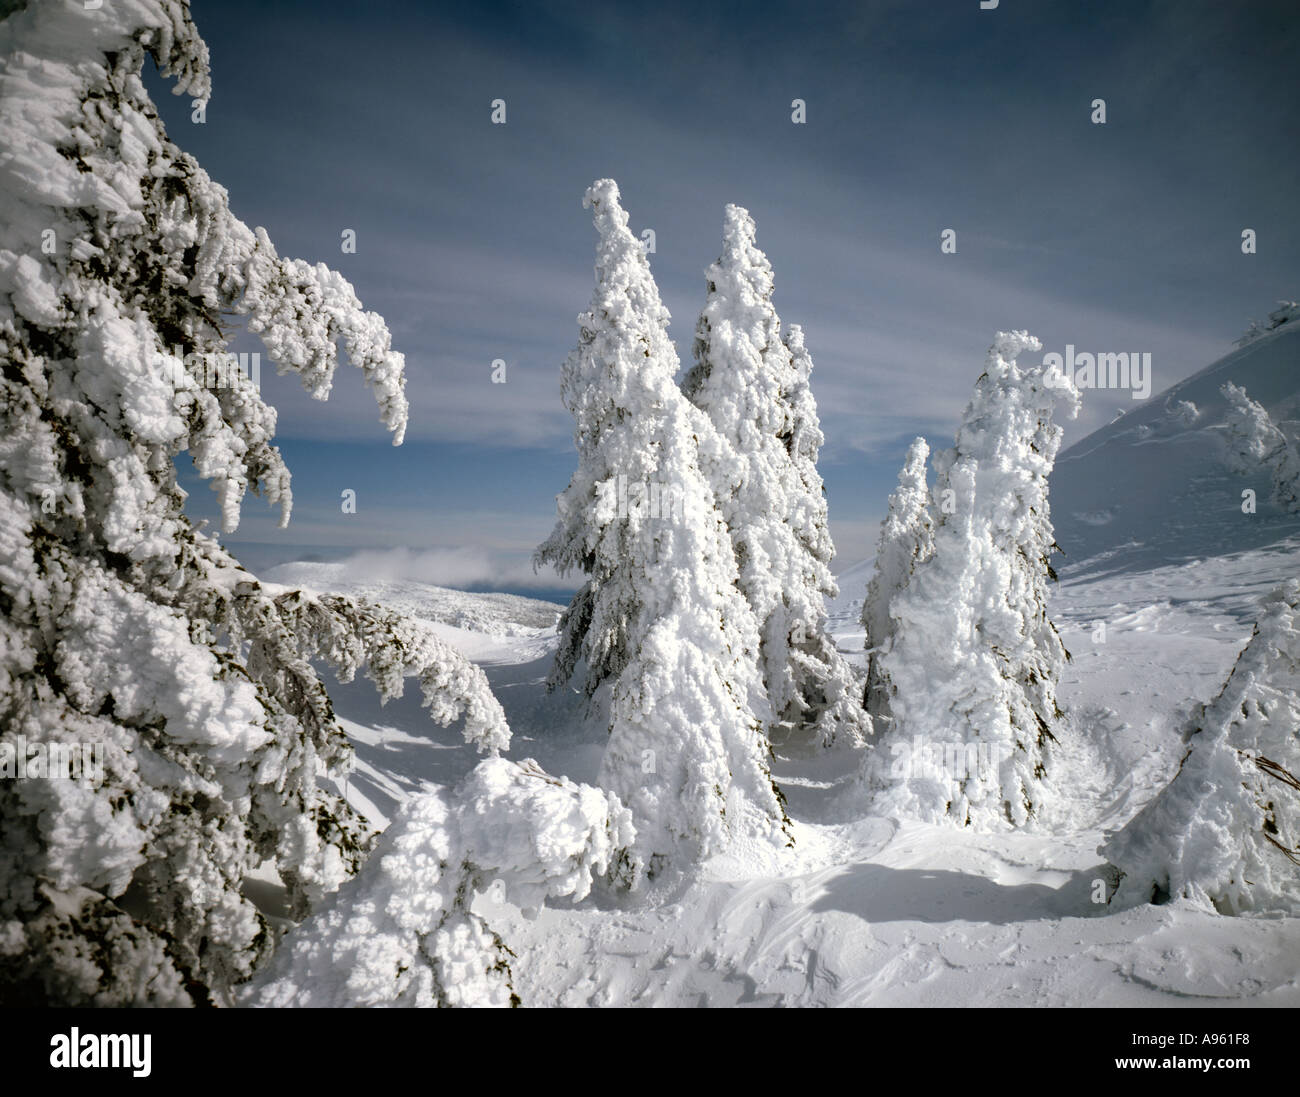 Les arbres recouverts de givre et de la neige fraîche dans un environnement de haute montagne Banque D'Images